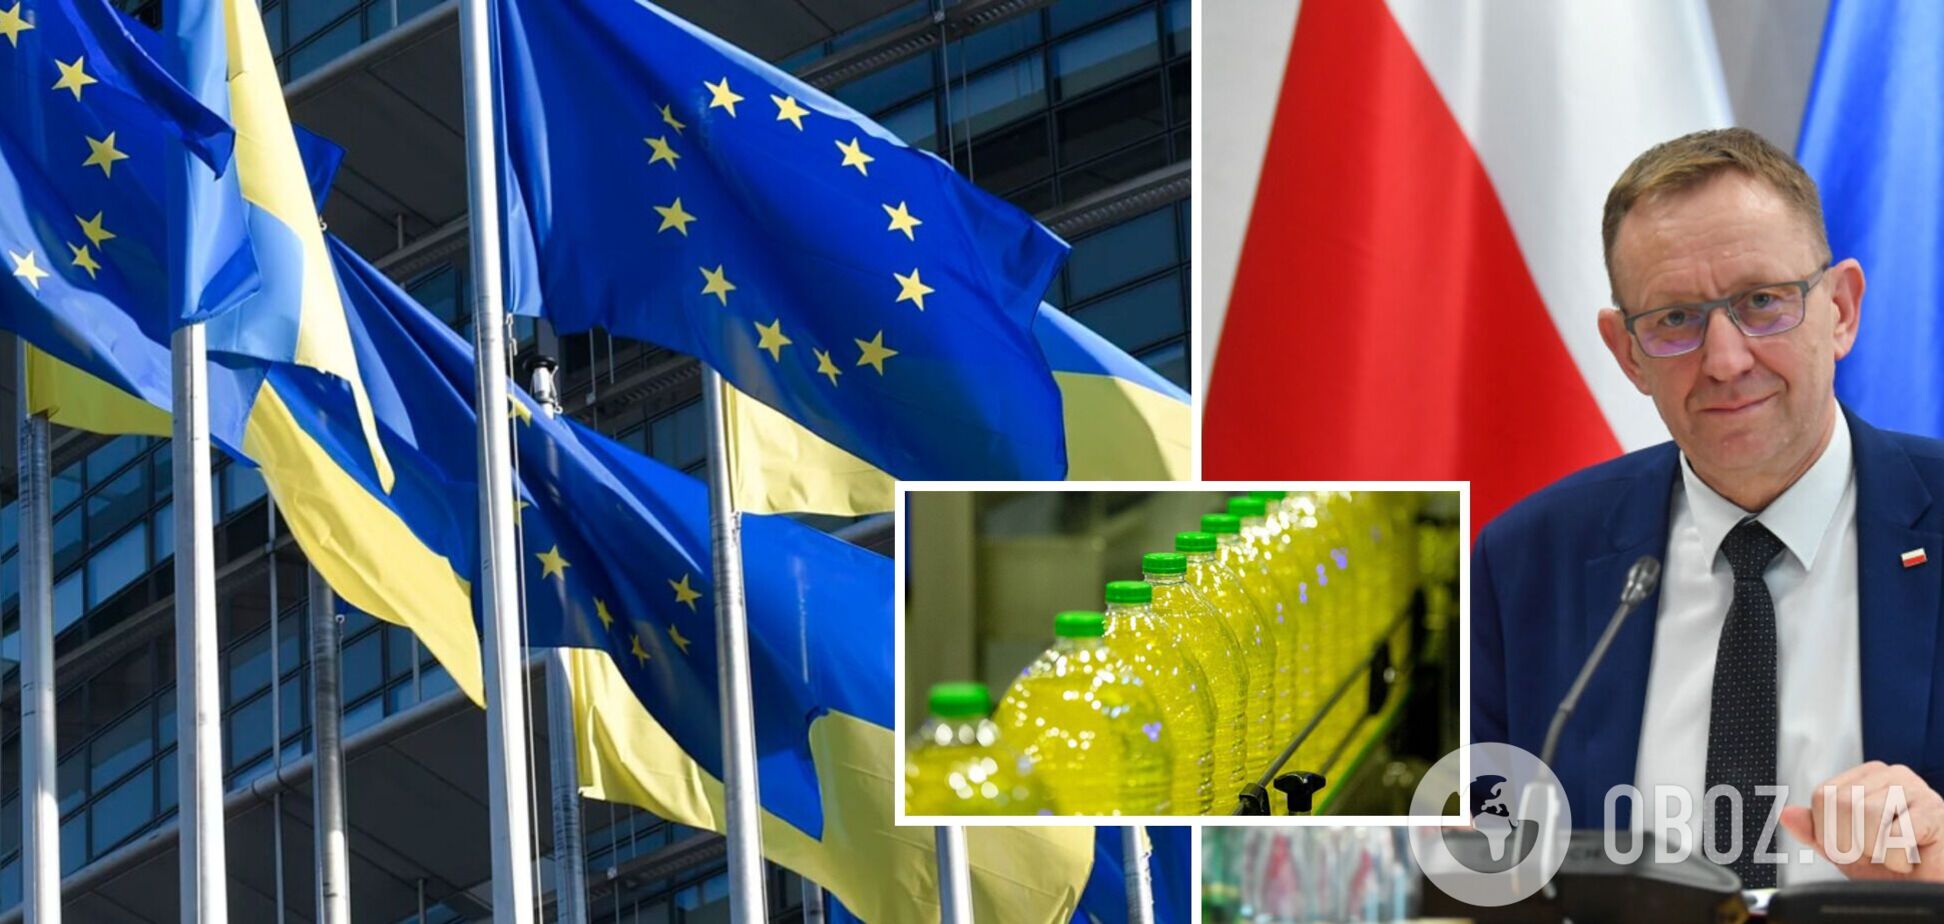 Еврокомиссия согласилась запретить импорт еще одного товара из Украины